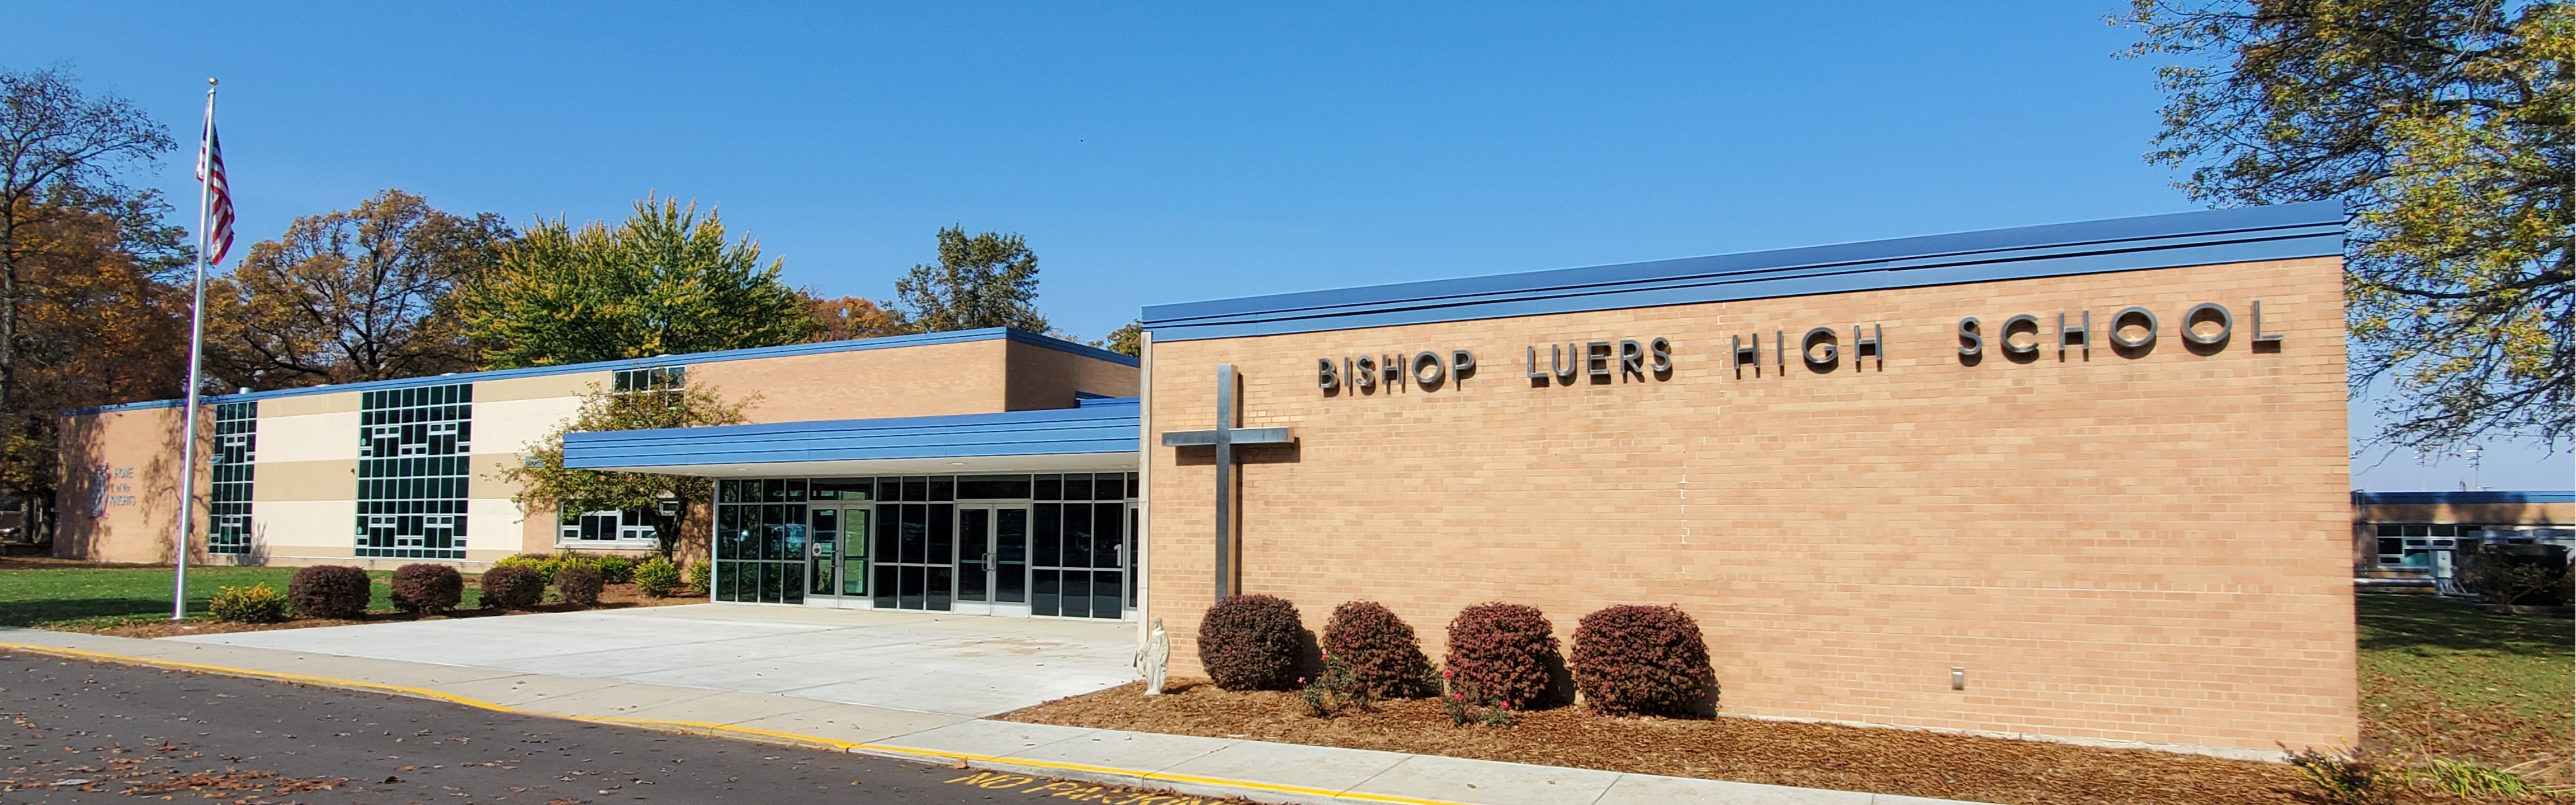 Bishop Luers High School Building